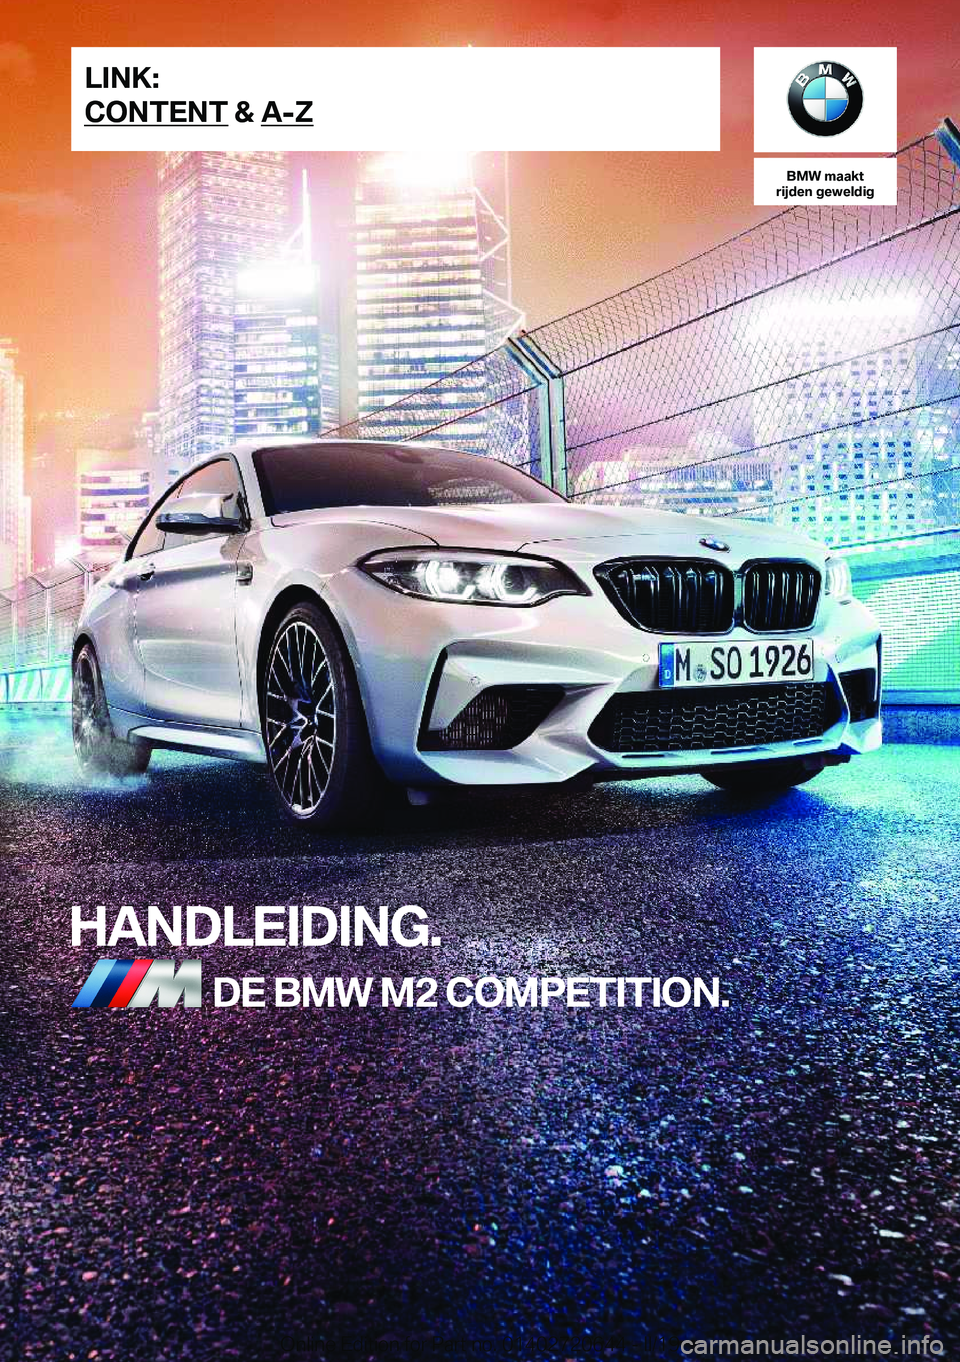 BMW M2 2020  Instructieboekjes (in Dutch) �B�M�W��m�a�a�k�t
�r�i�j�d�e�n��g�e�w�e�l�d�i�g
�H�A�N�D�L�E�I�D�I�N�G�.�D�E��B�M�W��M�2��C�O�M�P�E�T�I�T�I�O�N�.�L�I�N�K�:
�C�O�N�T�E�N�T��&��A�-�;�O�n�l�i�n�e��E�d�i�t�i�o�n��f�o�r��P�a�r�